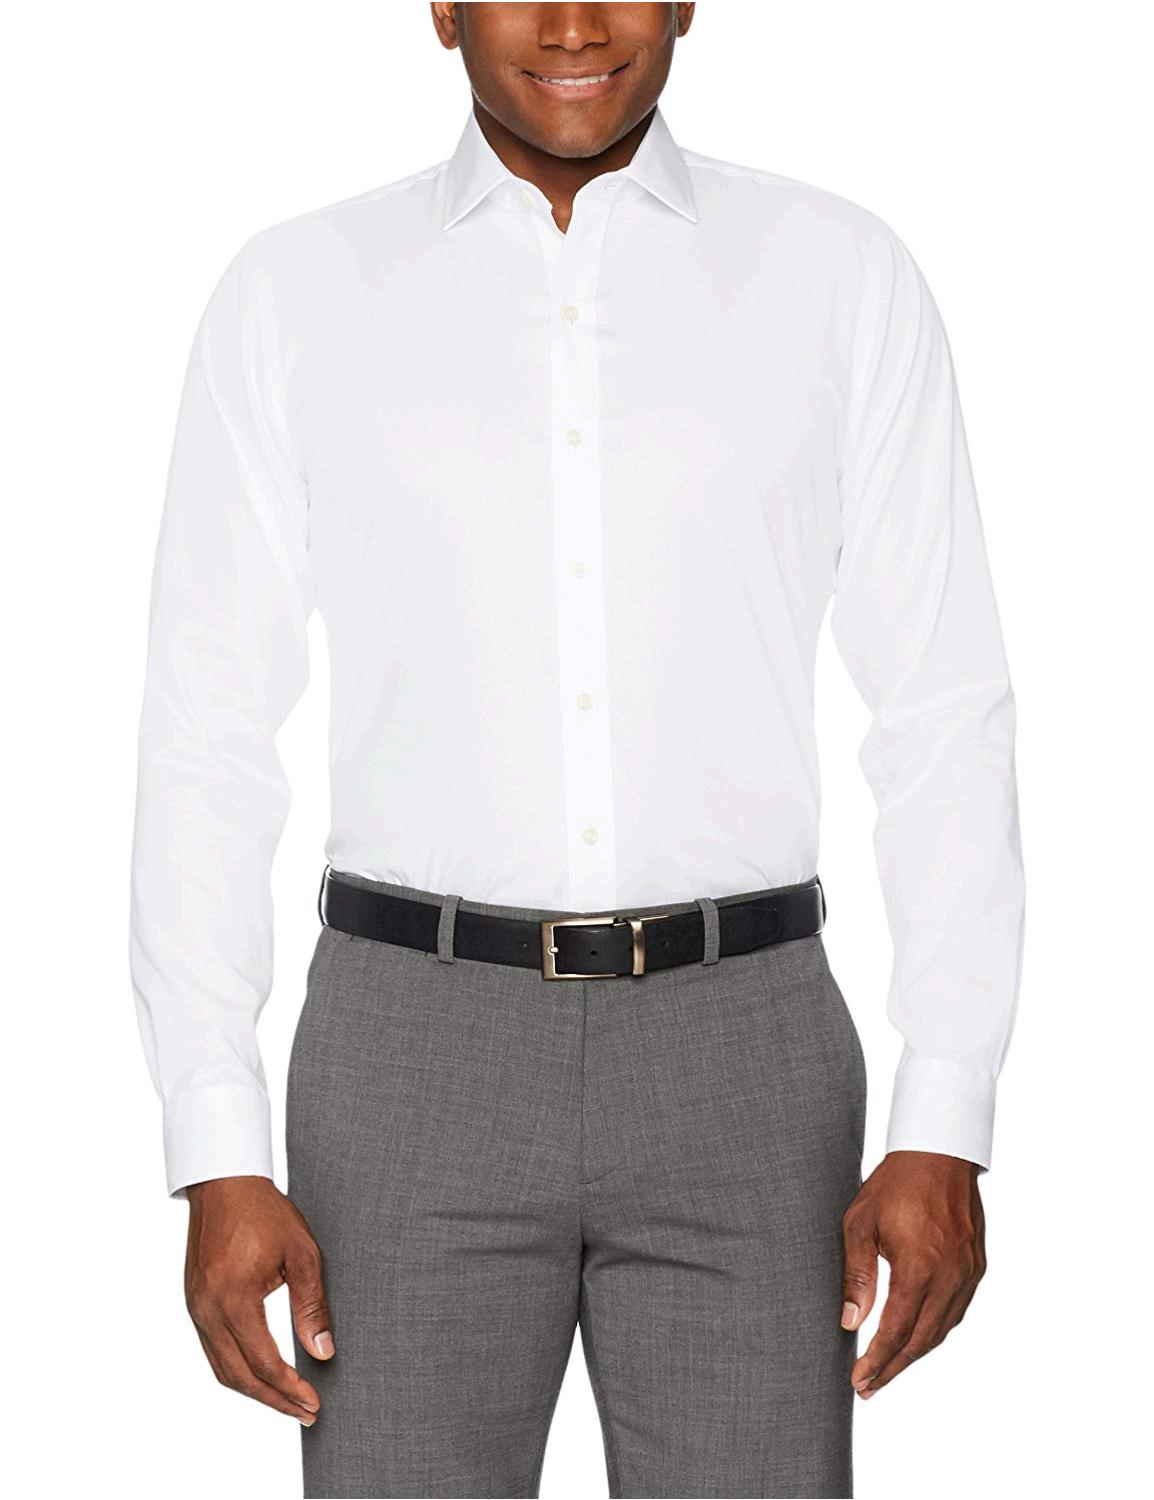 BUTTONED DOWN Men's Slim Fit Spread-Collar Non-Iron Dress, White, Size